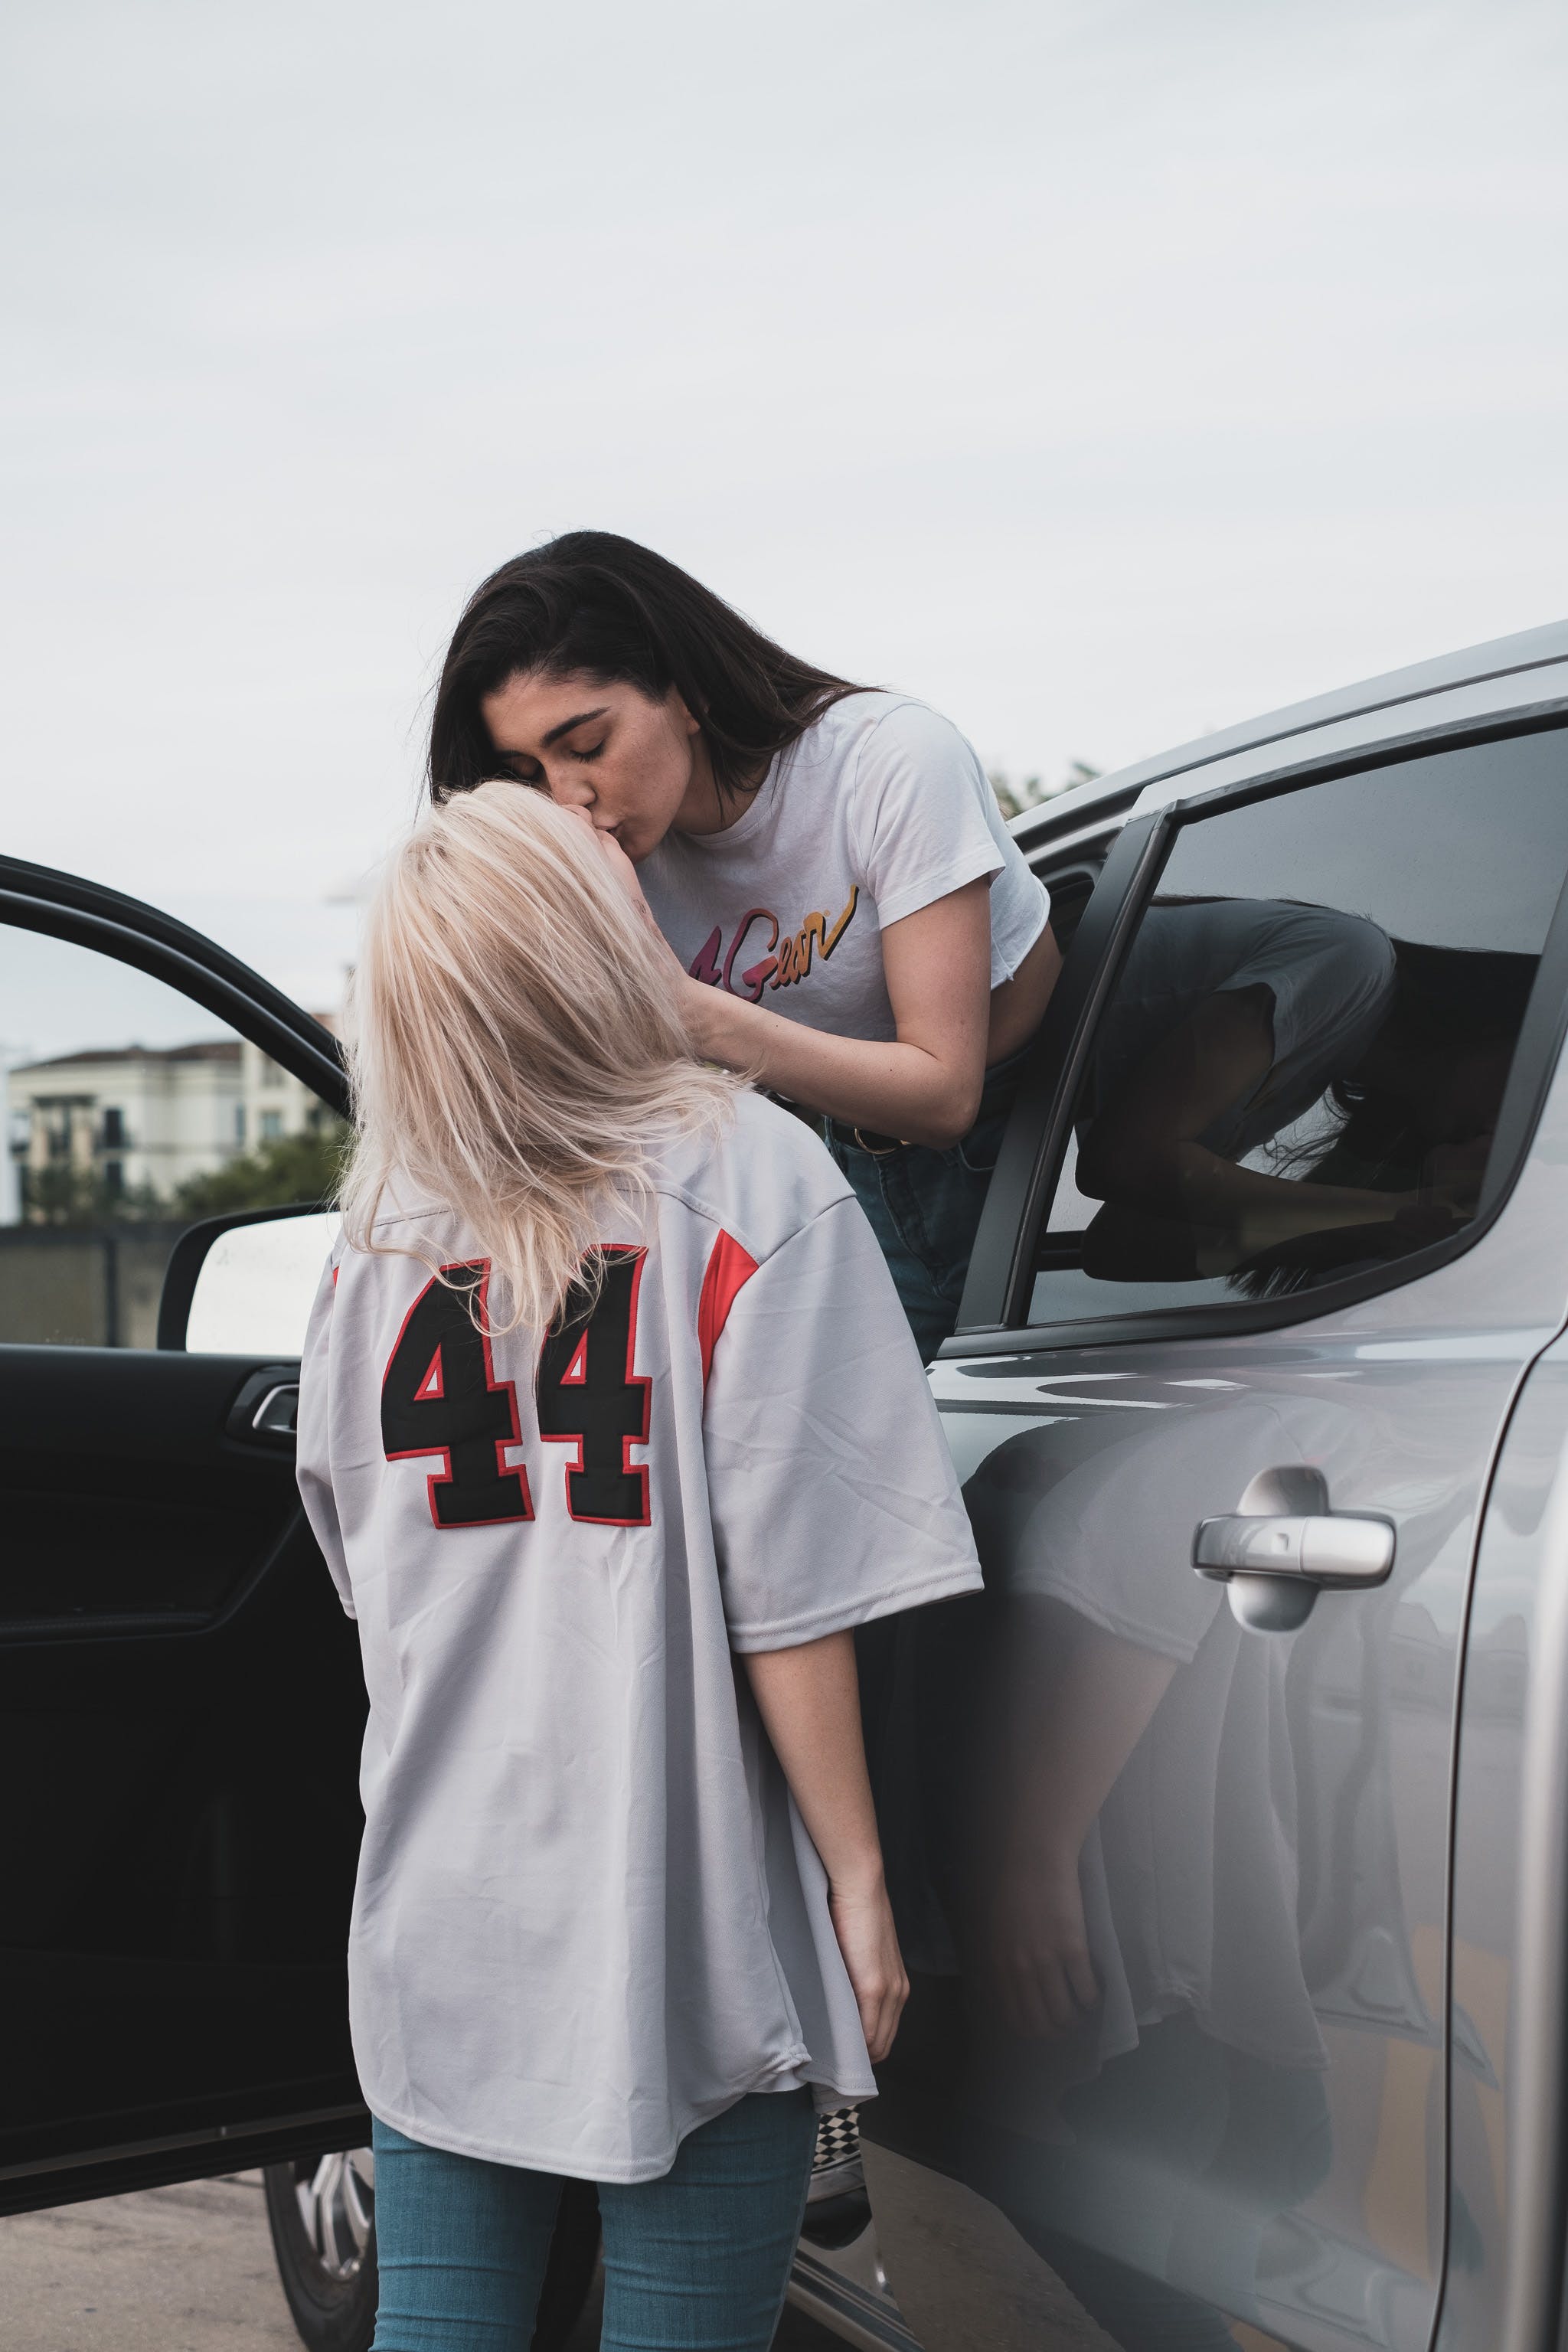 Un couple s'embrassant près d'une voiture | Source : Pexels